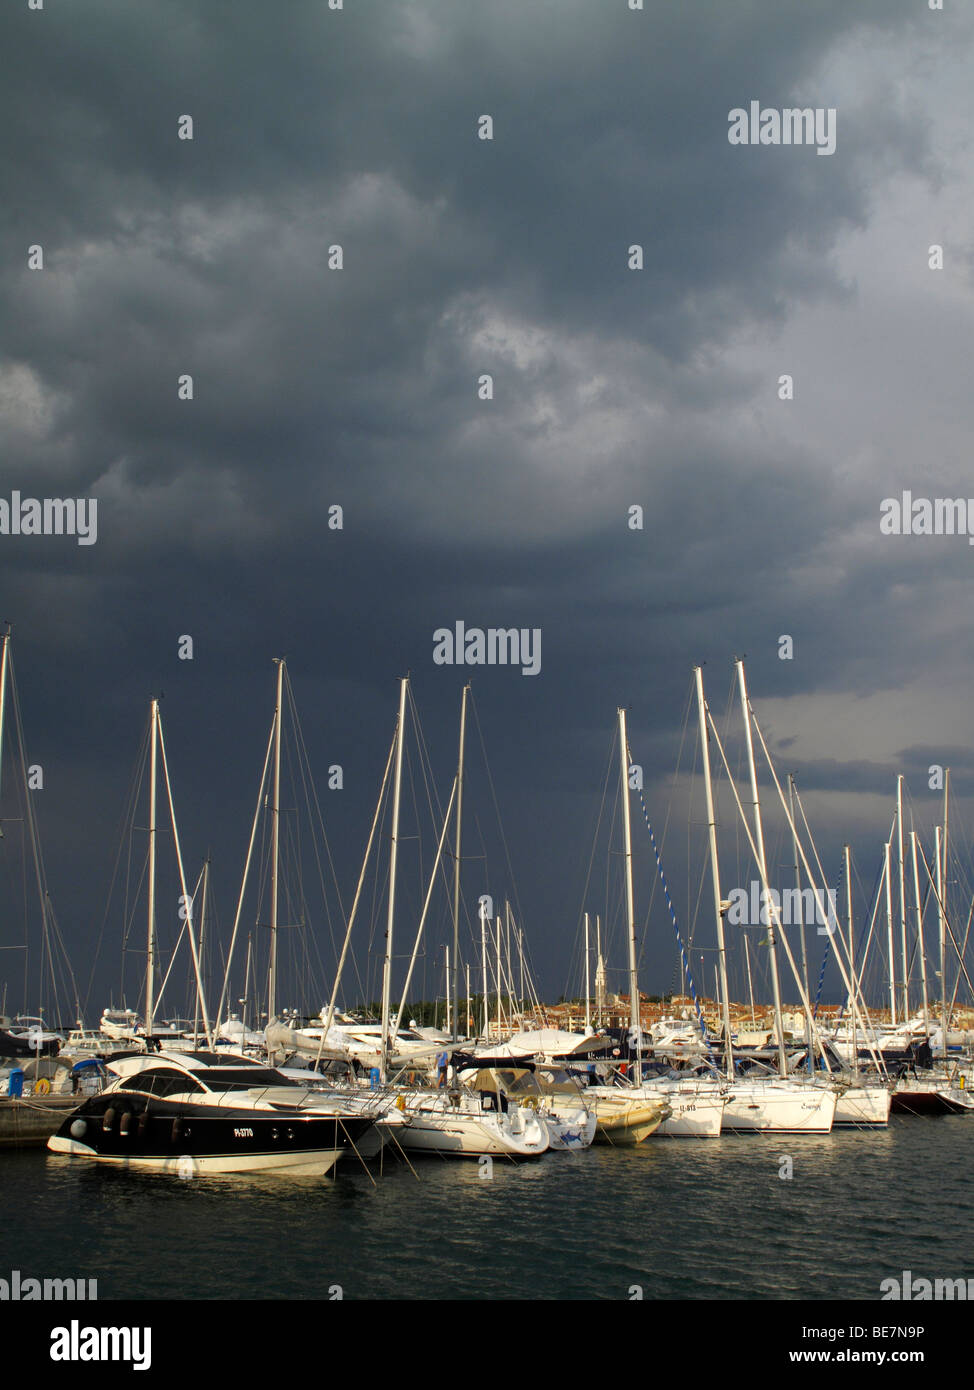 Stormy sky over the marina at Isola or Izola in Slovenia Stock Photo